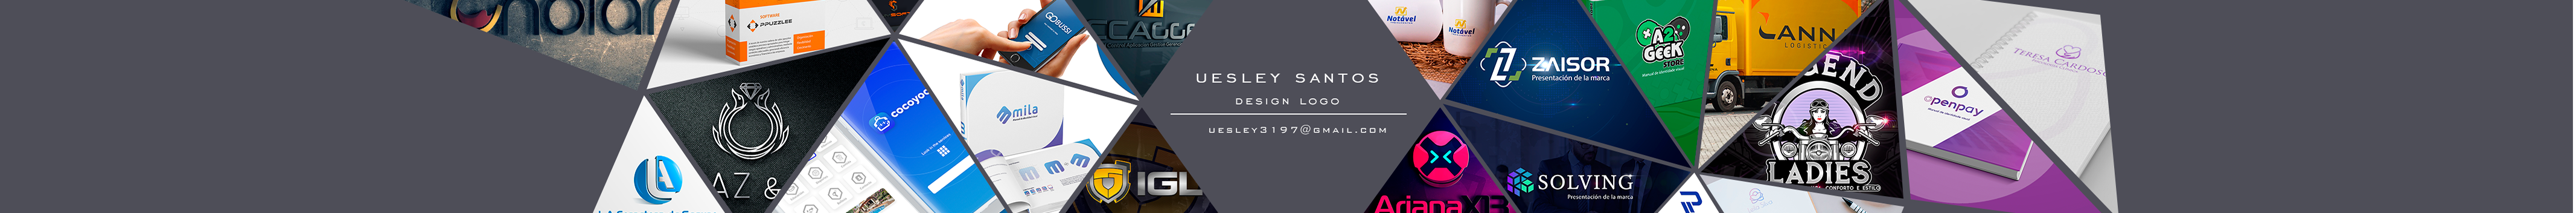 Uesley Melo dos Santos's profile banner